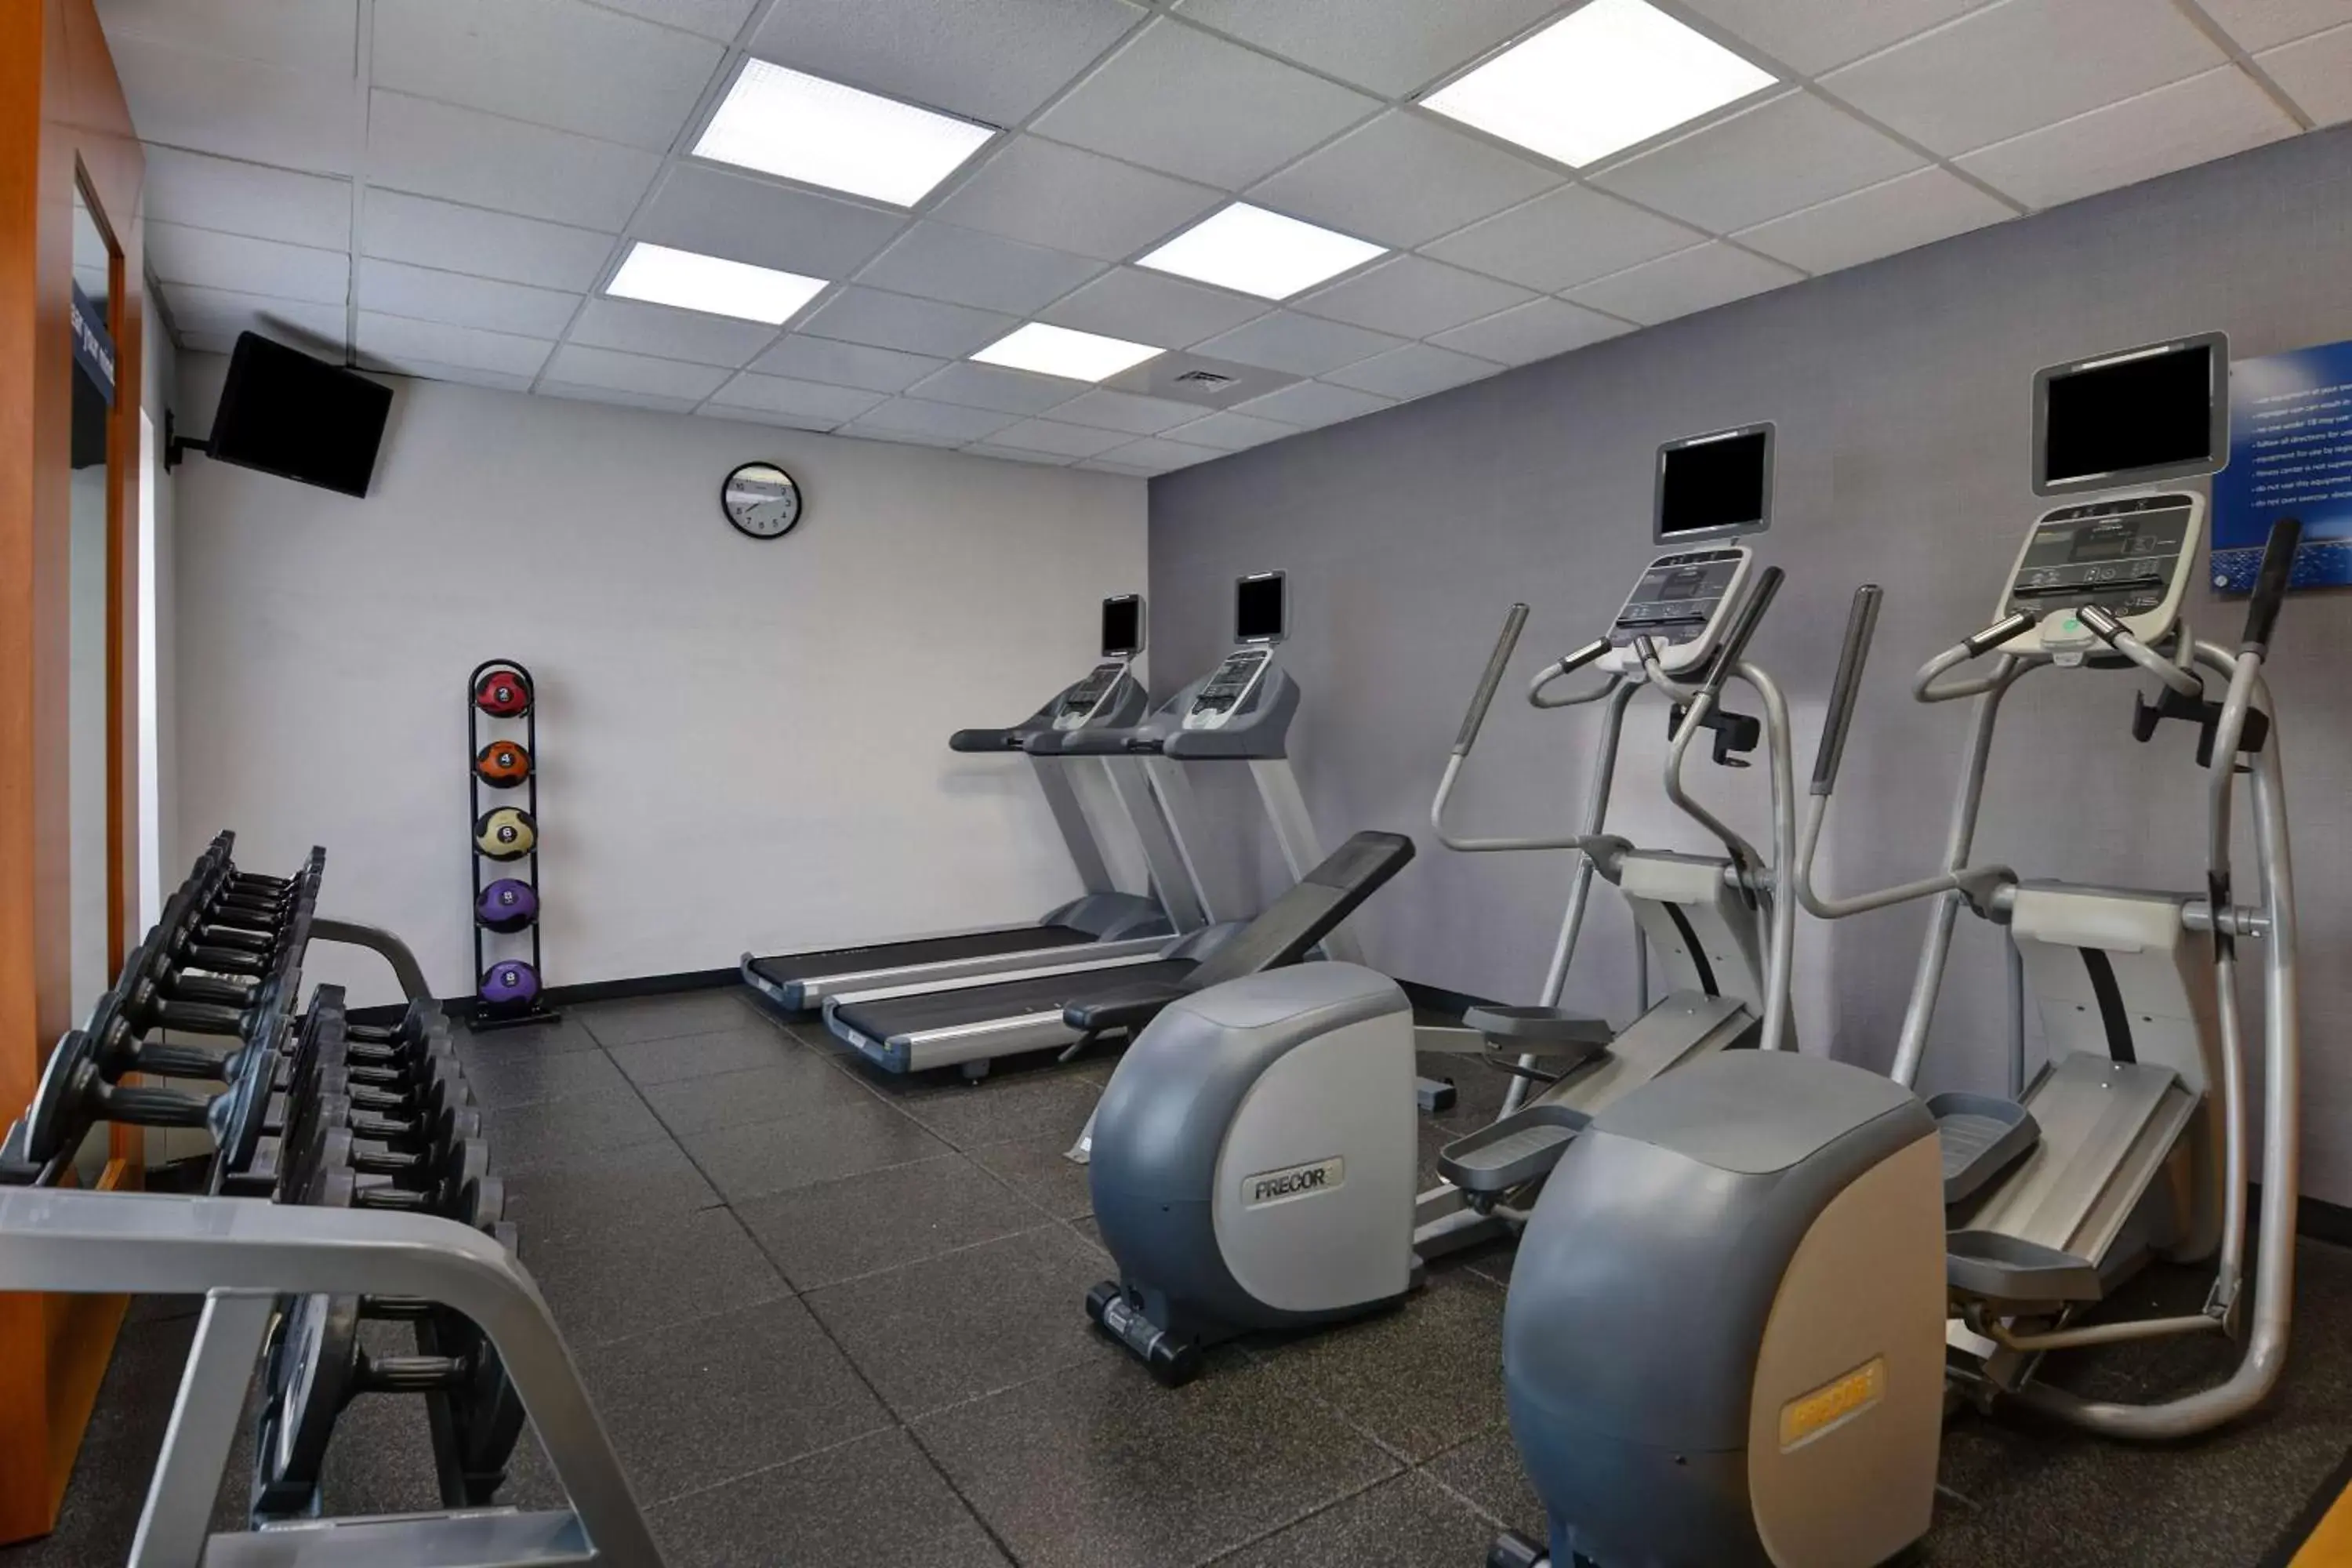 Fitness centre/facilities, Fitness Center/Facilities in Hampton Inn & Suites Birmingham-Hoover-Galleria